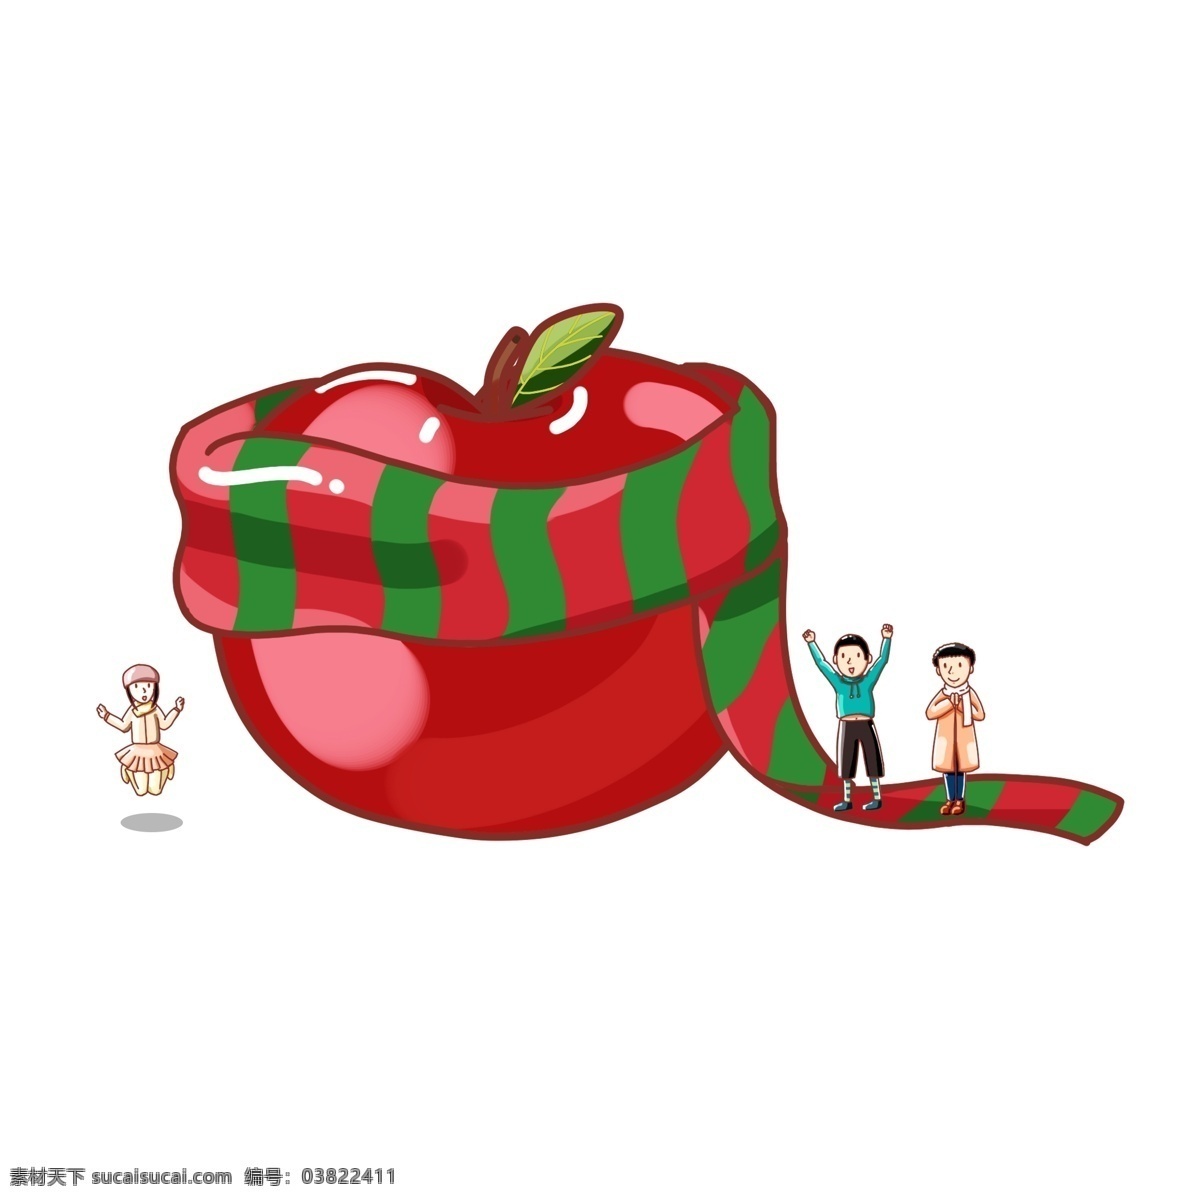 平安夜 手绘 朋友 收获 一个 大 苹果 免 抠 平安 圣诞夜 圣诞节 红绿色 兄弟 男生 男孩 女生 女孩 得到 获得 超级大的苹果 圣诞围巾 围巾